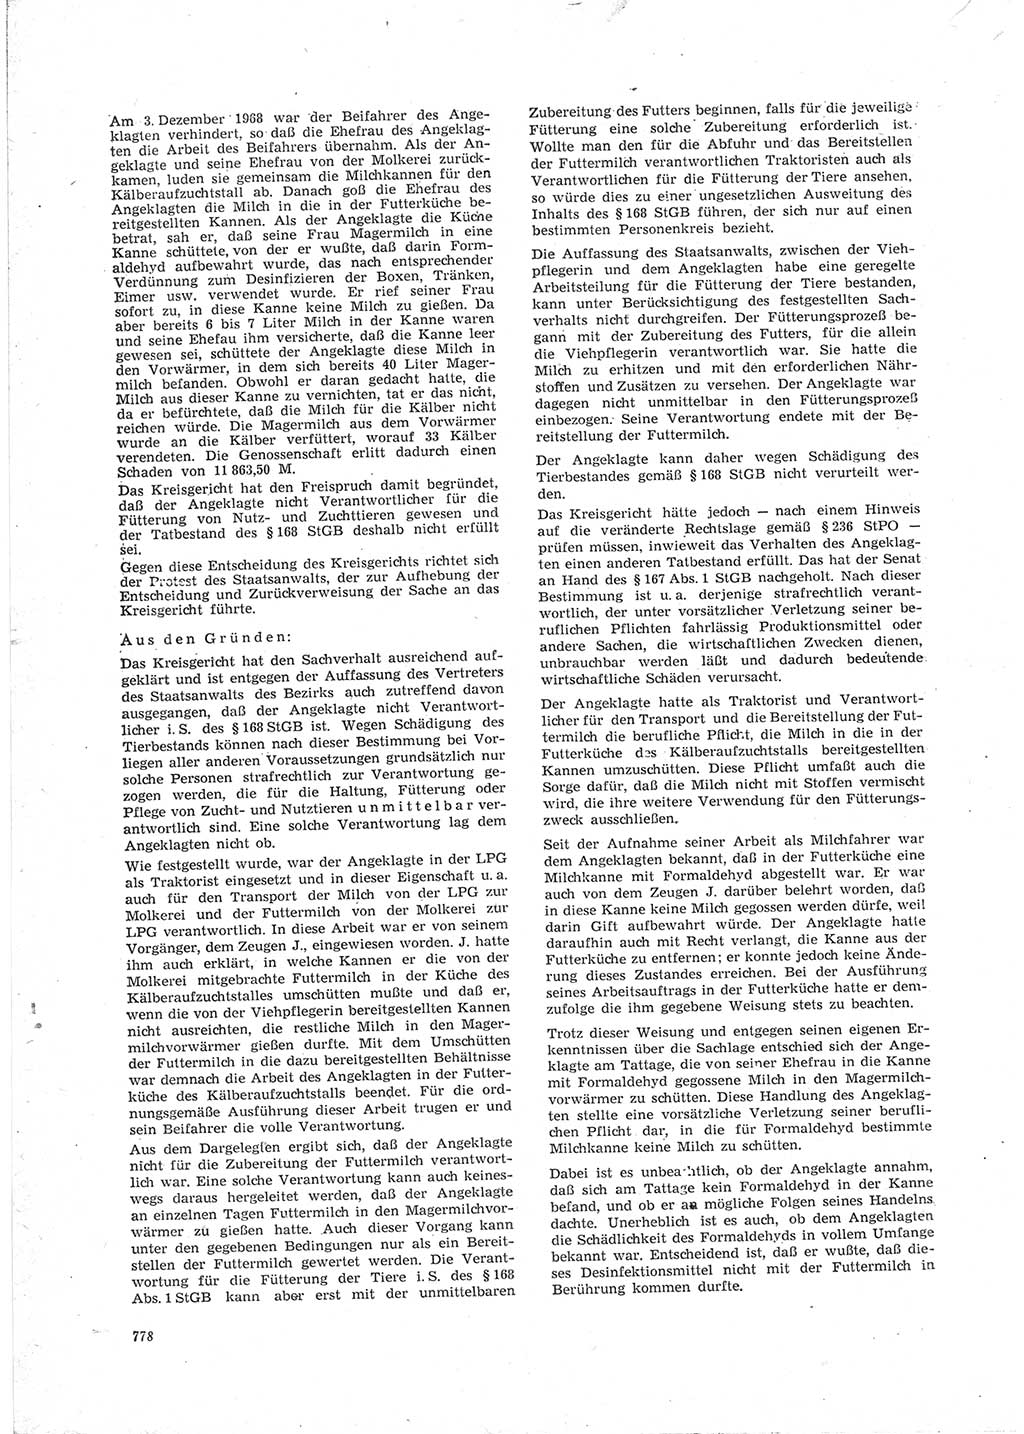 Neue Justiz (NJ), Zeitschrift für Recht und Rechtswissenschaft [Deutsche Demokratische Republik (DDR)], 23. Jahrgang 1969, Seite 778 (NJ DDR 1969, S. 778)